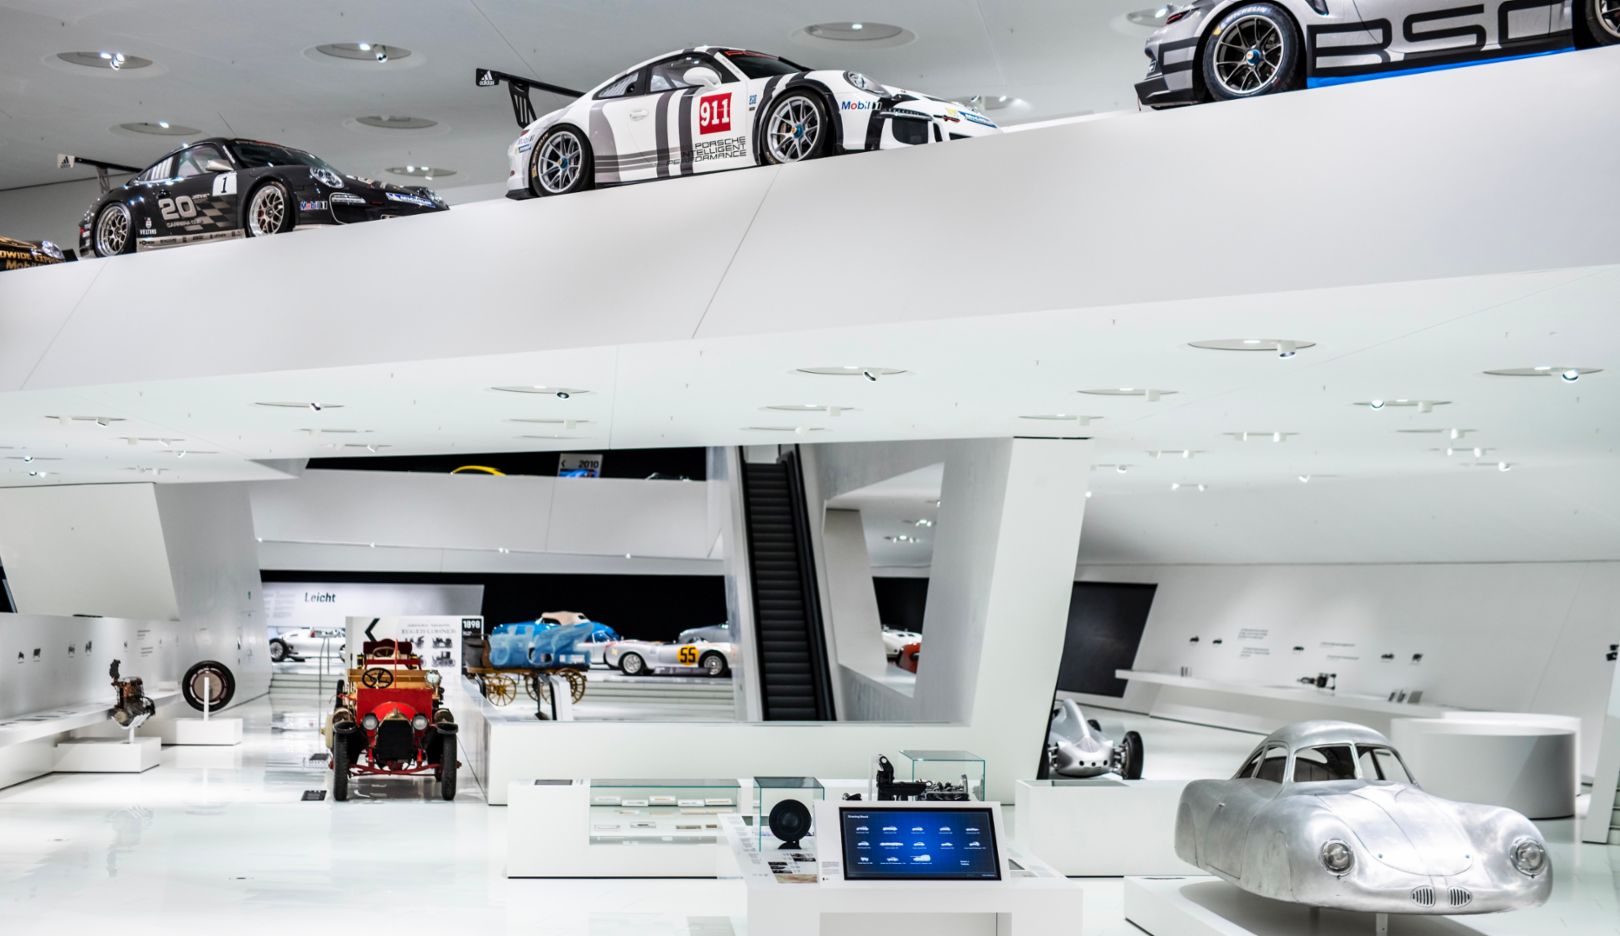 Dauerausstellung, Porsche Museum, 2021, Porsche AG